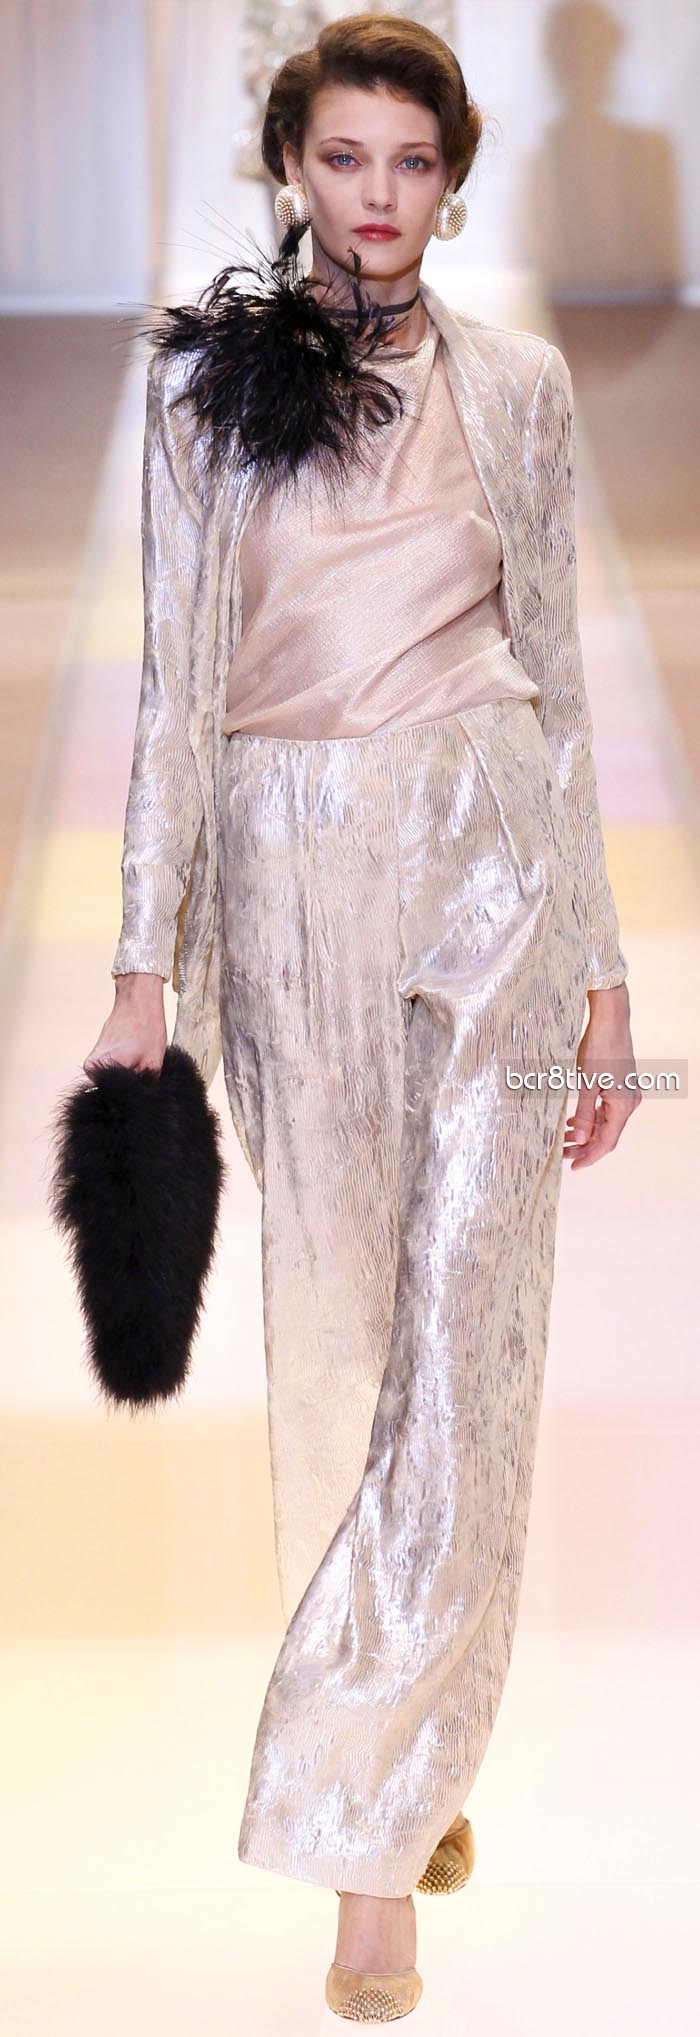 Giorgio Armani Privé Fall Winter 2013-14 Haute Couture – Be Creative